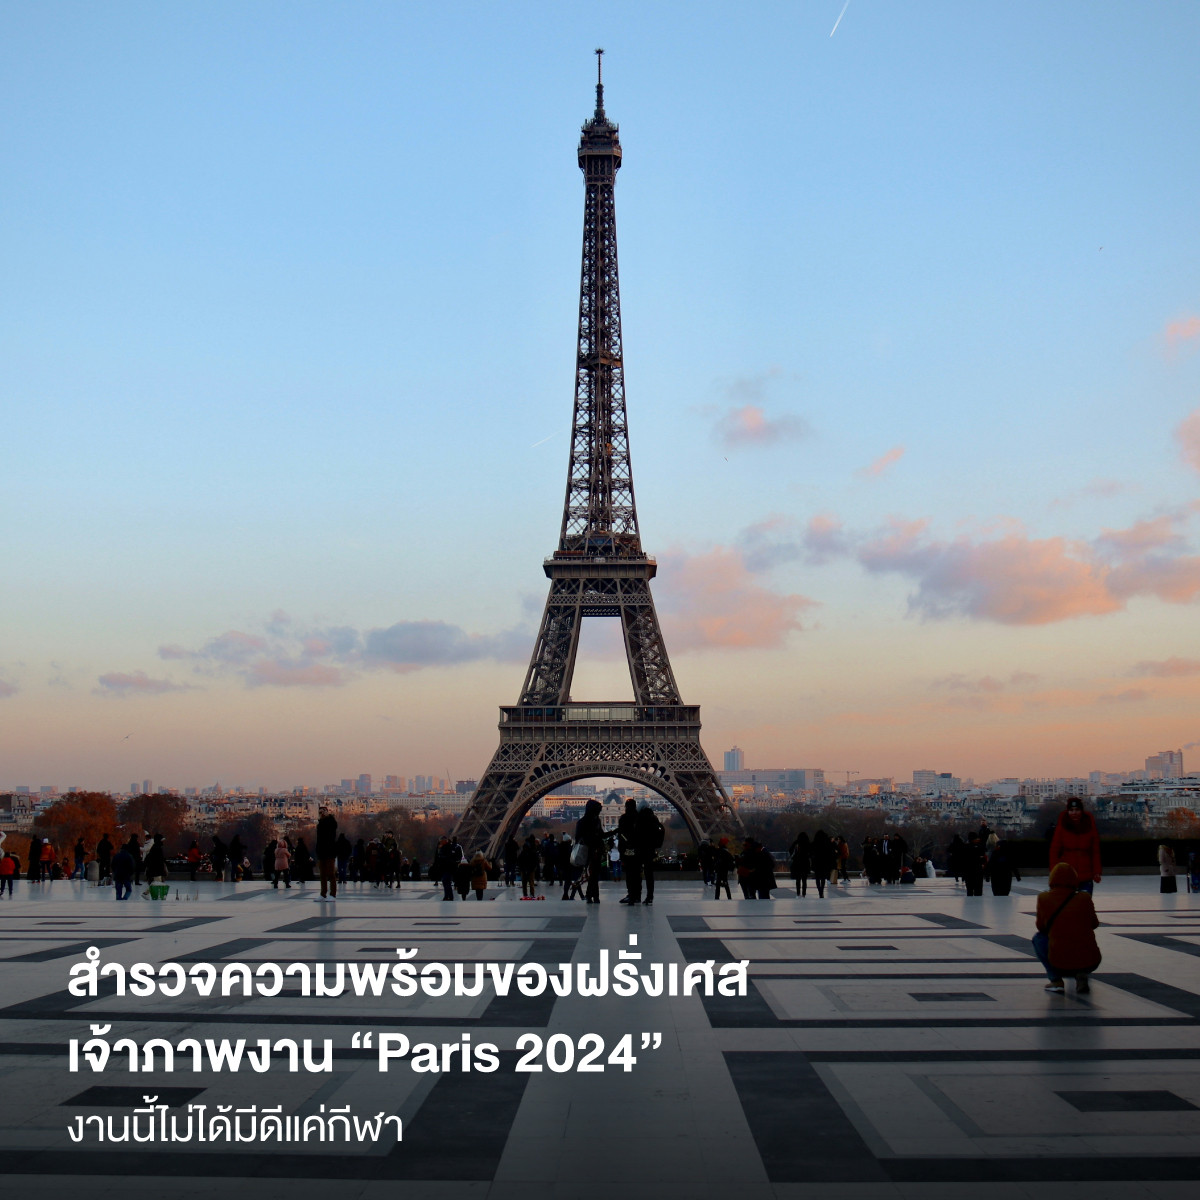 สำรวจความพร้อมของฝรั่งเศส เจ้าภาพกีฬาโอลิมปิก “Paris 2024” งานนี้ไม่ได้มีดีแค่กีฬา